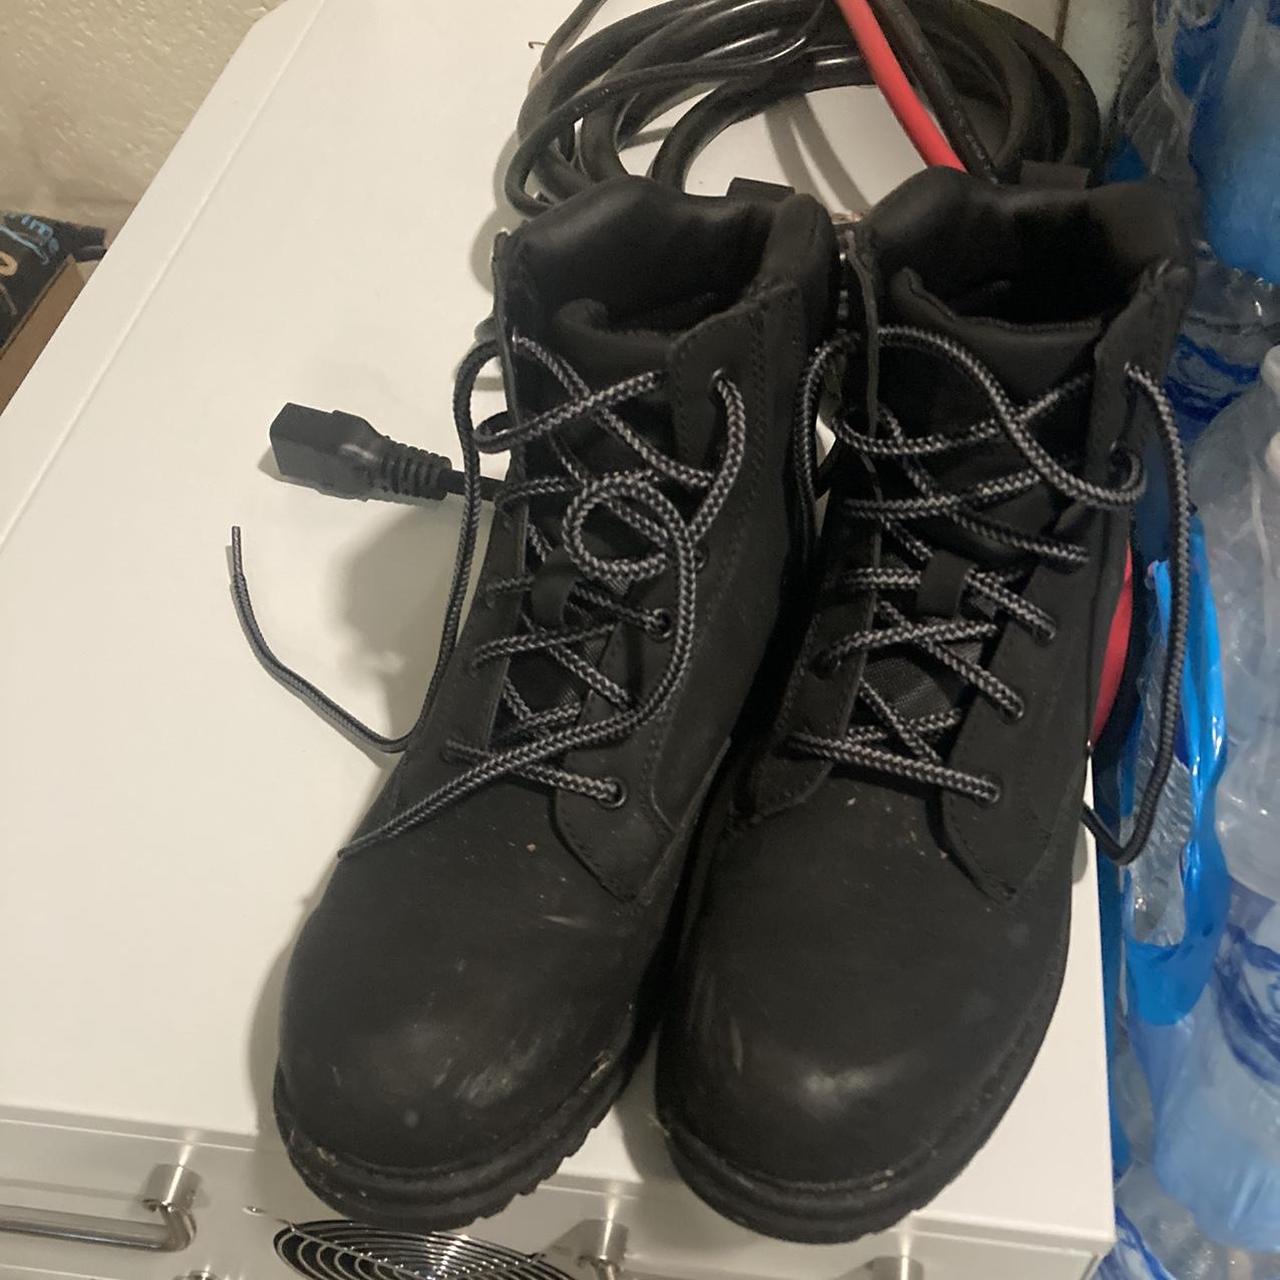 Black Steel Toe Boots Size: 7 - Depop